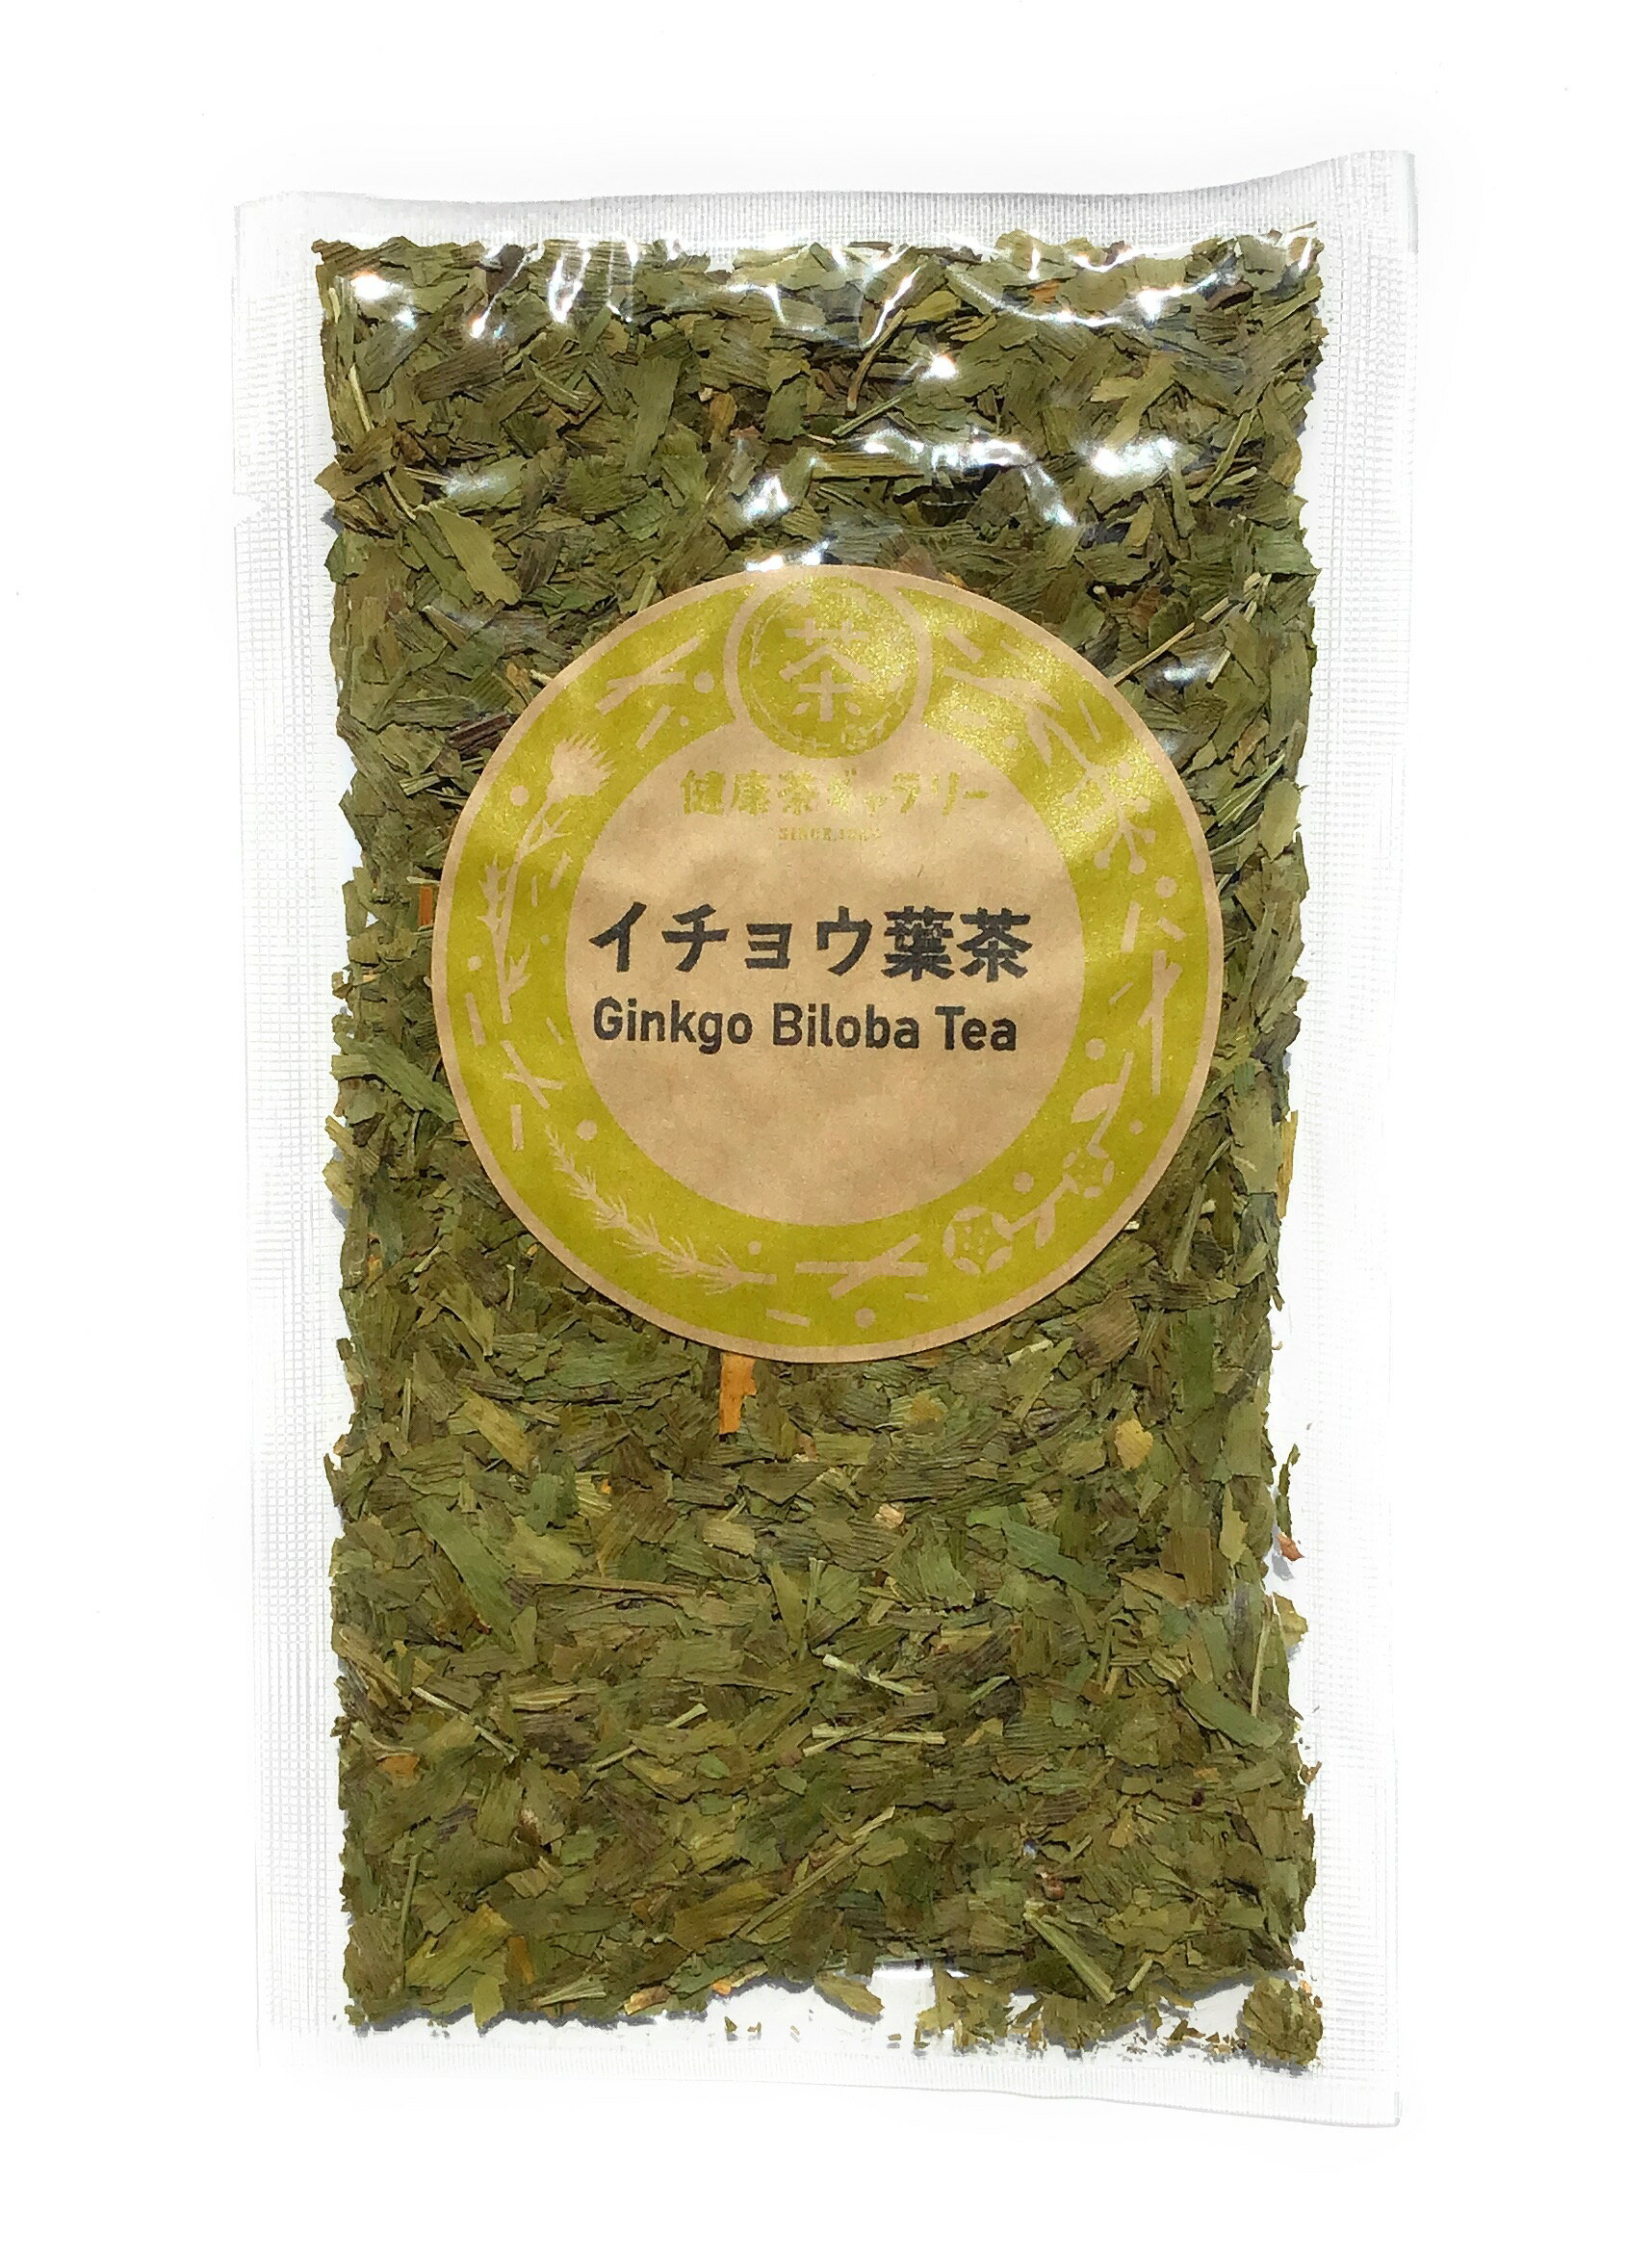 内 容 イチョウ葉茶 20g 保存方法 直射日光、高温多湿を避けて保存。 原材料 イチョウの葉 原産国 日本 賞味期限 1年以上 広告文責 健康茶ギャラリー 0172-35-8458 メーカー（製造） 健康茶ギャラリー 区分 日本製・健康茶イチョウ葉茶 Ginkgo Biloba tea ハッキリ明快な日々を望むご年配の方を中心に愛飲されています。 巡りを滞らせずに快活に年を重ねたい方、 隅々まで温めて、しなやかな心身を育みたい方におすすめです。 ※ノンカフェイン　 ※煮出しは避け、体質に合わない場合は、飲用を中止してください。 ※妊娠中、授乳中の方、お子様は飲用をお避けください。 ※煮出しは避け、体質に合わない場合は、飲用を中止してください。 ※抗凝固薬、血栓溶解薬、血糖降下剤、てんかんや不整脈などの発作を抑制する薬剤を服用中の方は、医師にご相談ください。 ※本品製造工場では「大豆」を含む製品を製造しております。